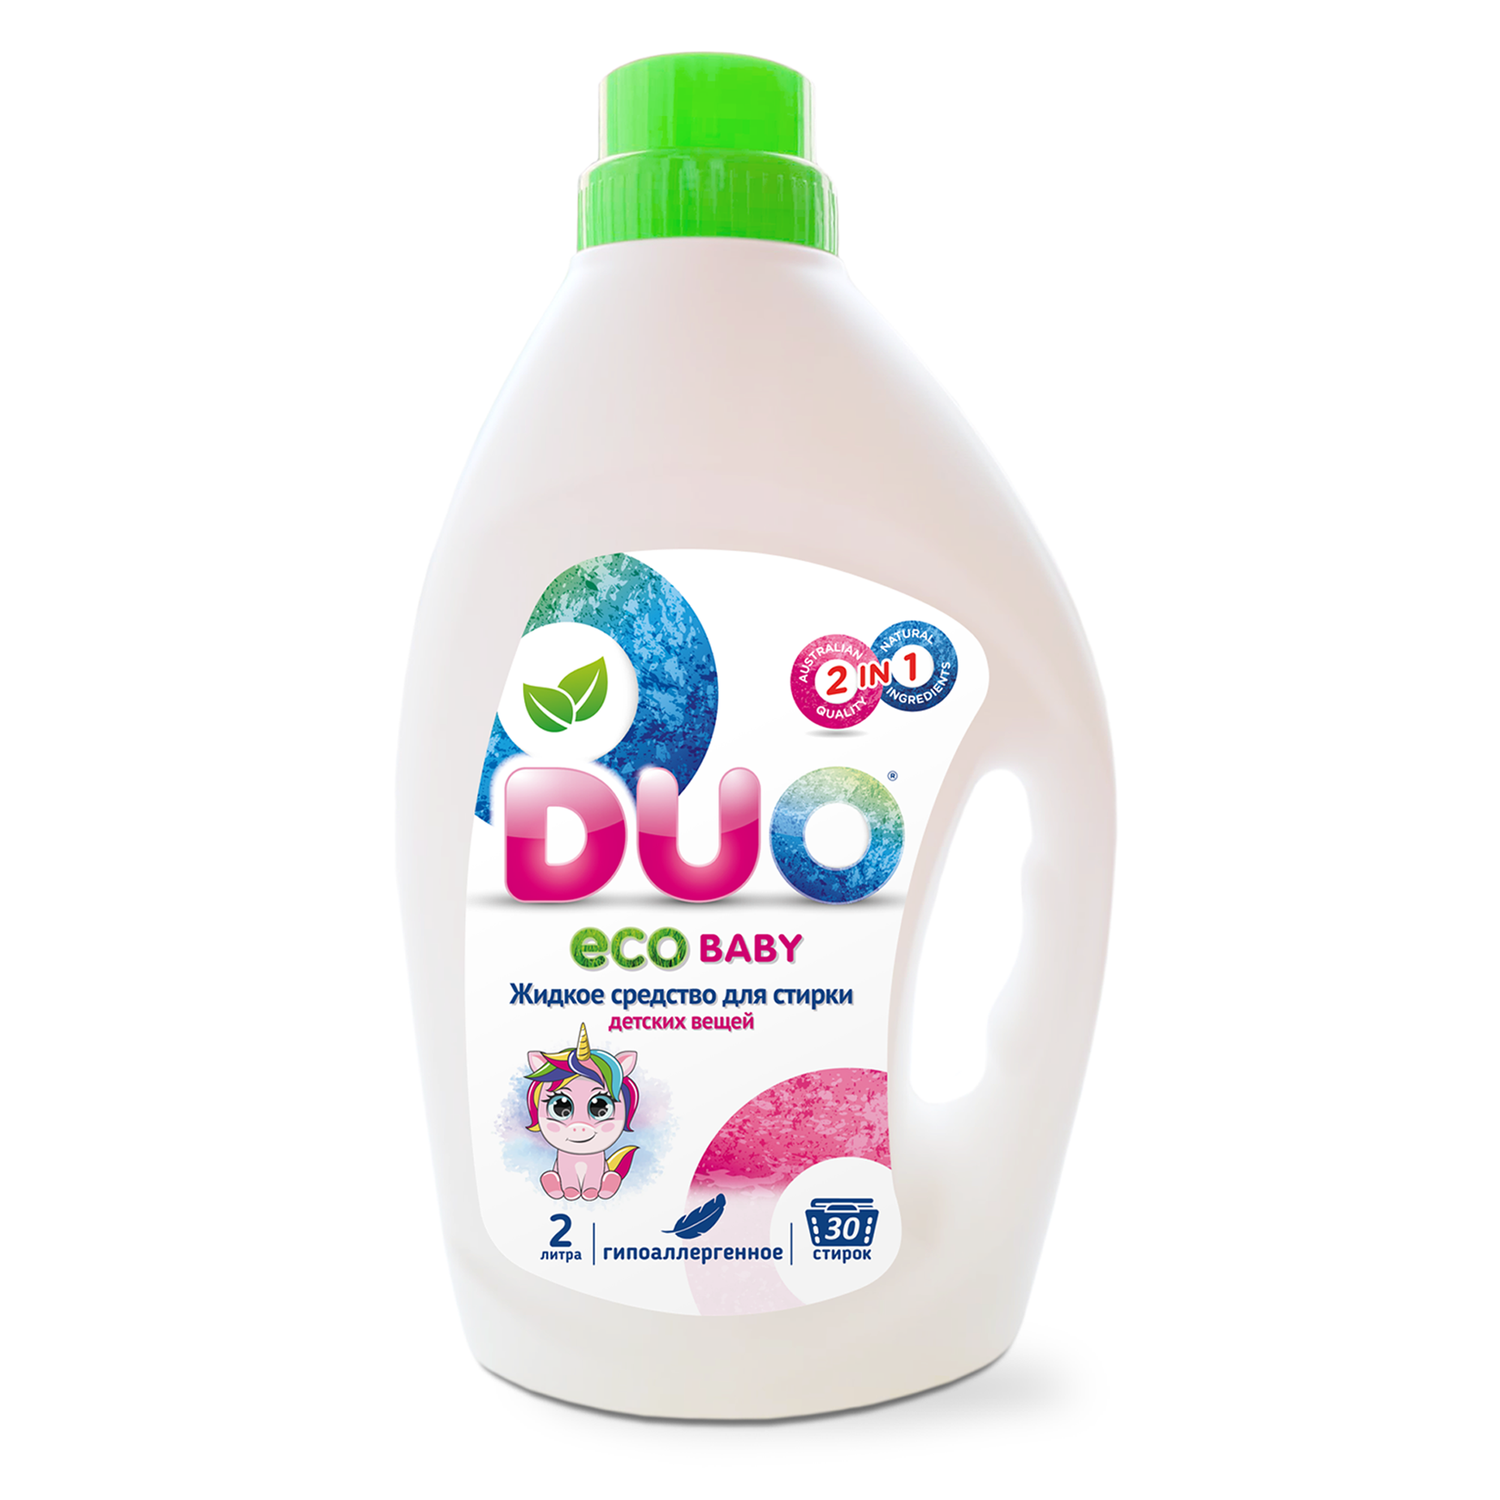 Жидкое экологичное средство DUO Eco baby для стирки детского белья 0+ гипоаллергенное 2 л 30 стирок - фото 1